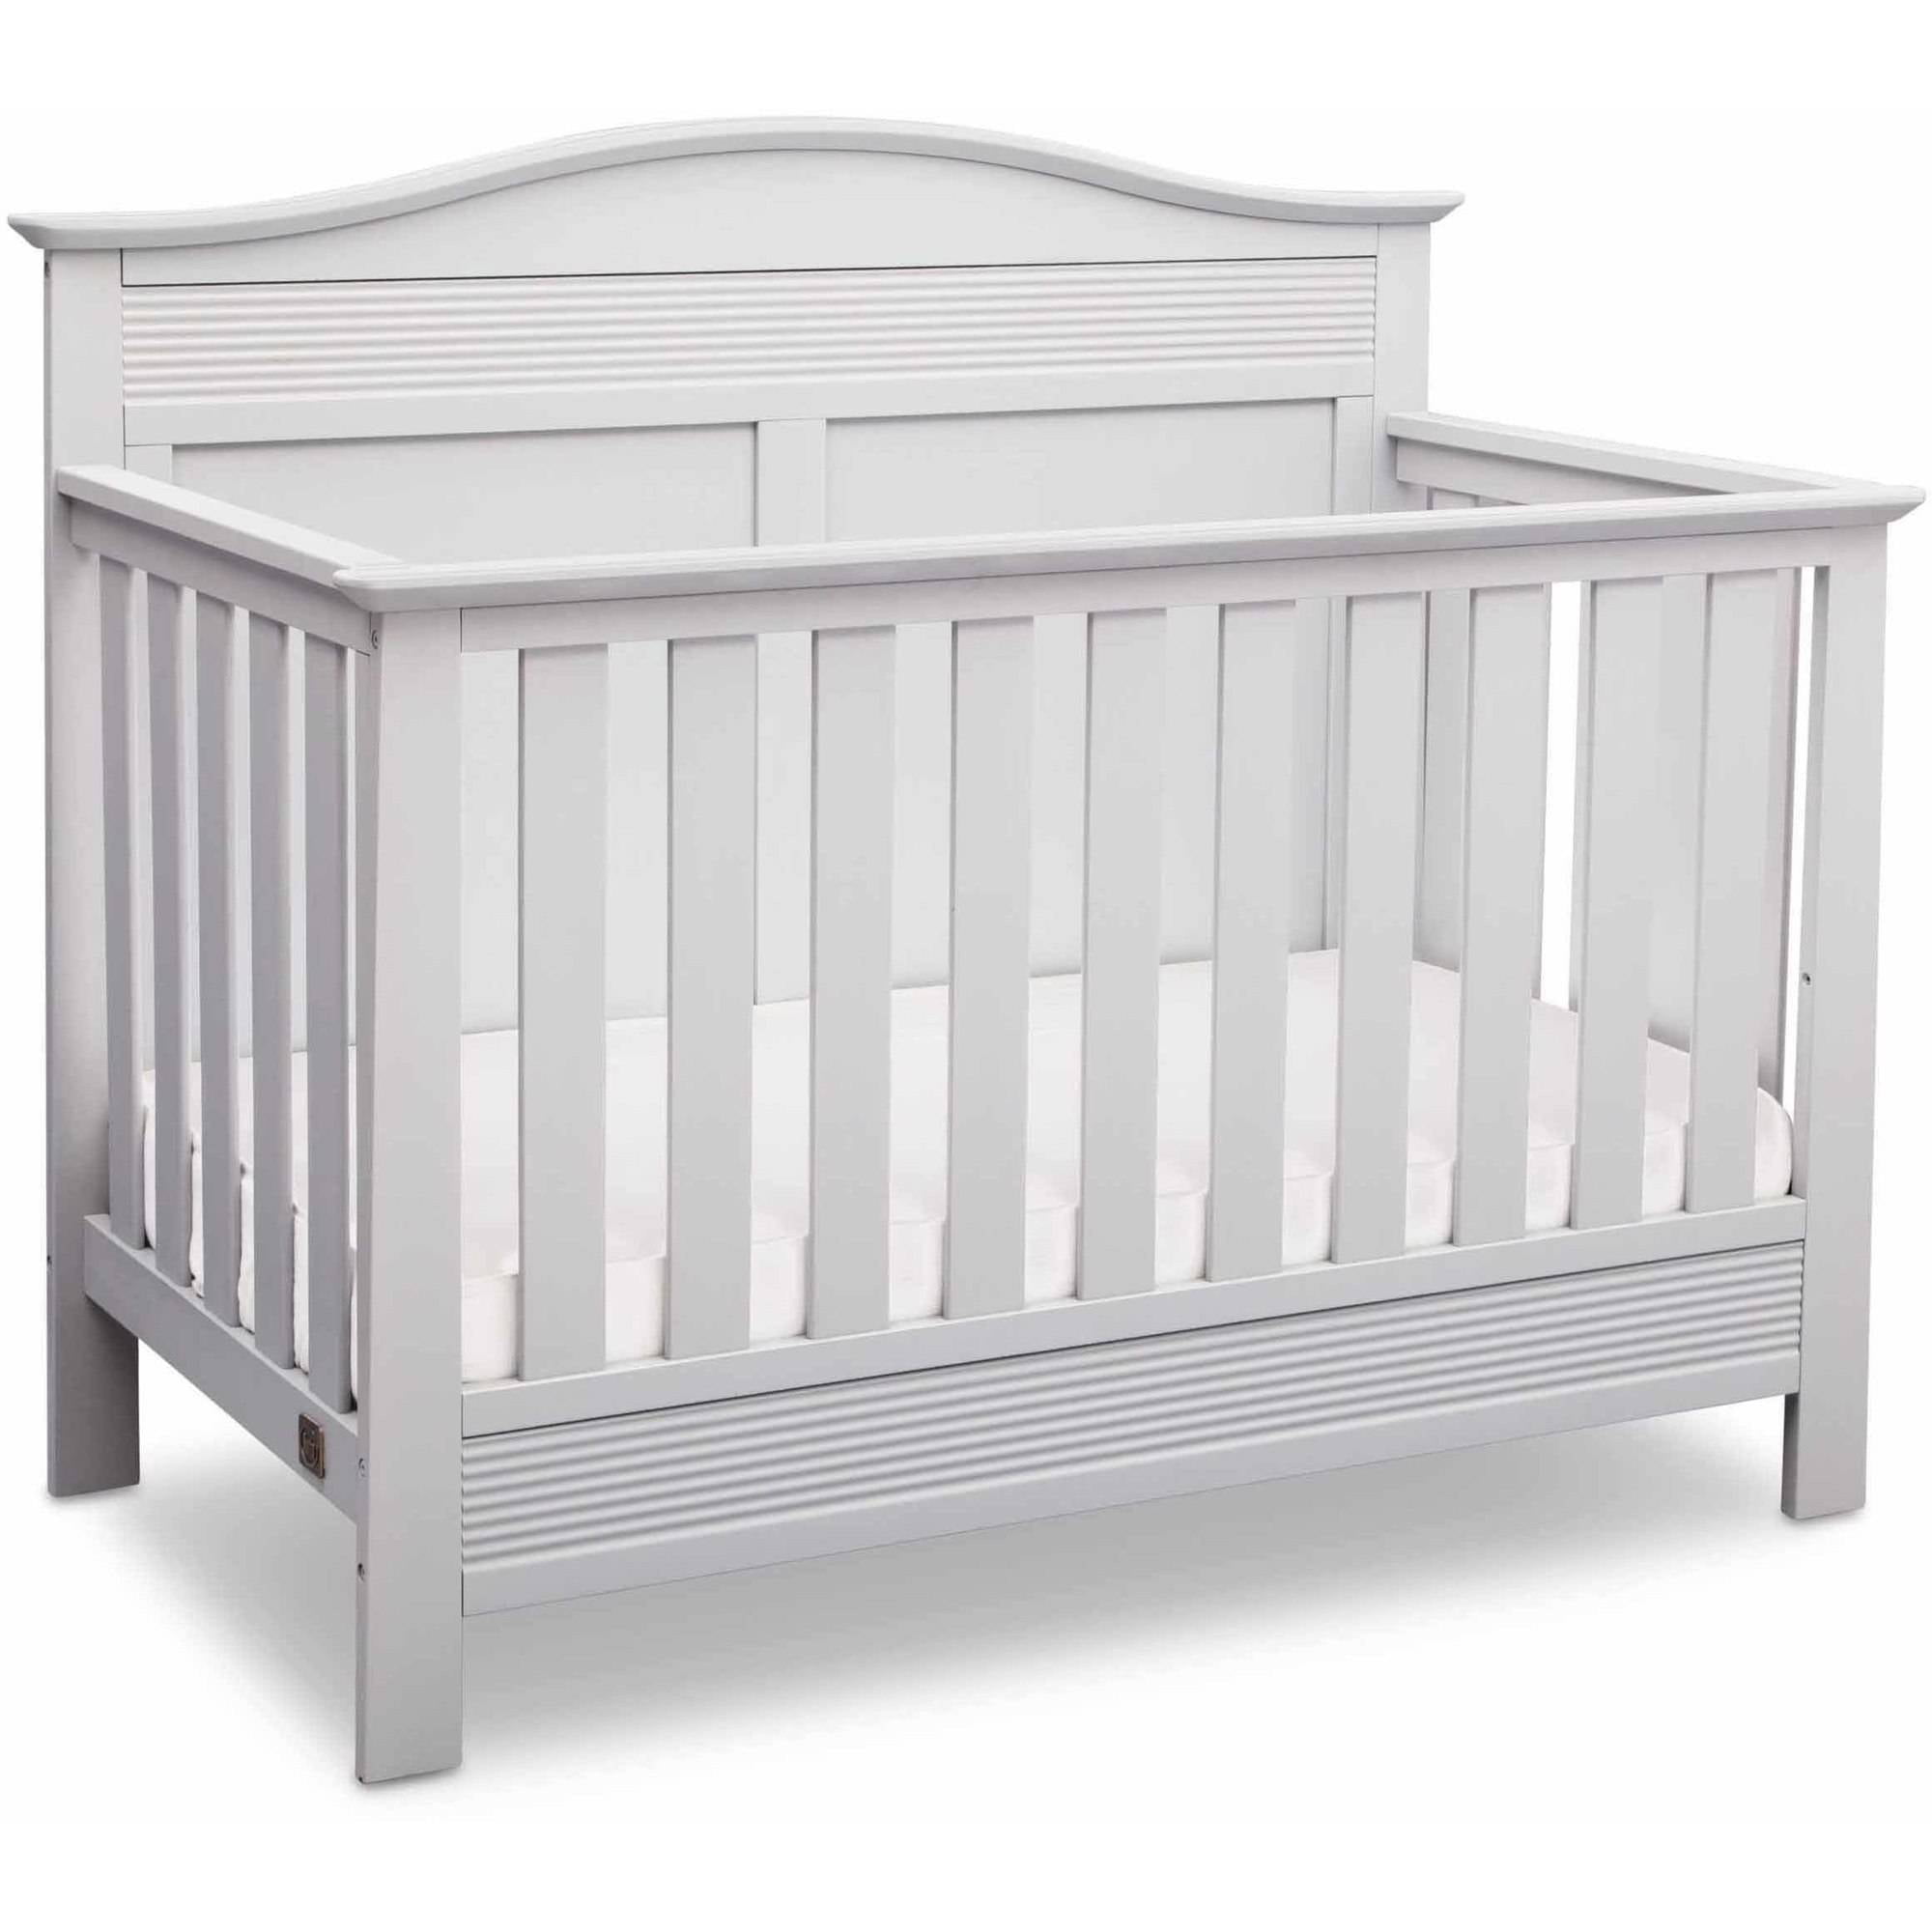 Serta Barrett 4-in-1 Convertible Baby Crib Bianca White 